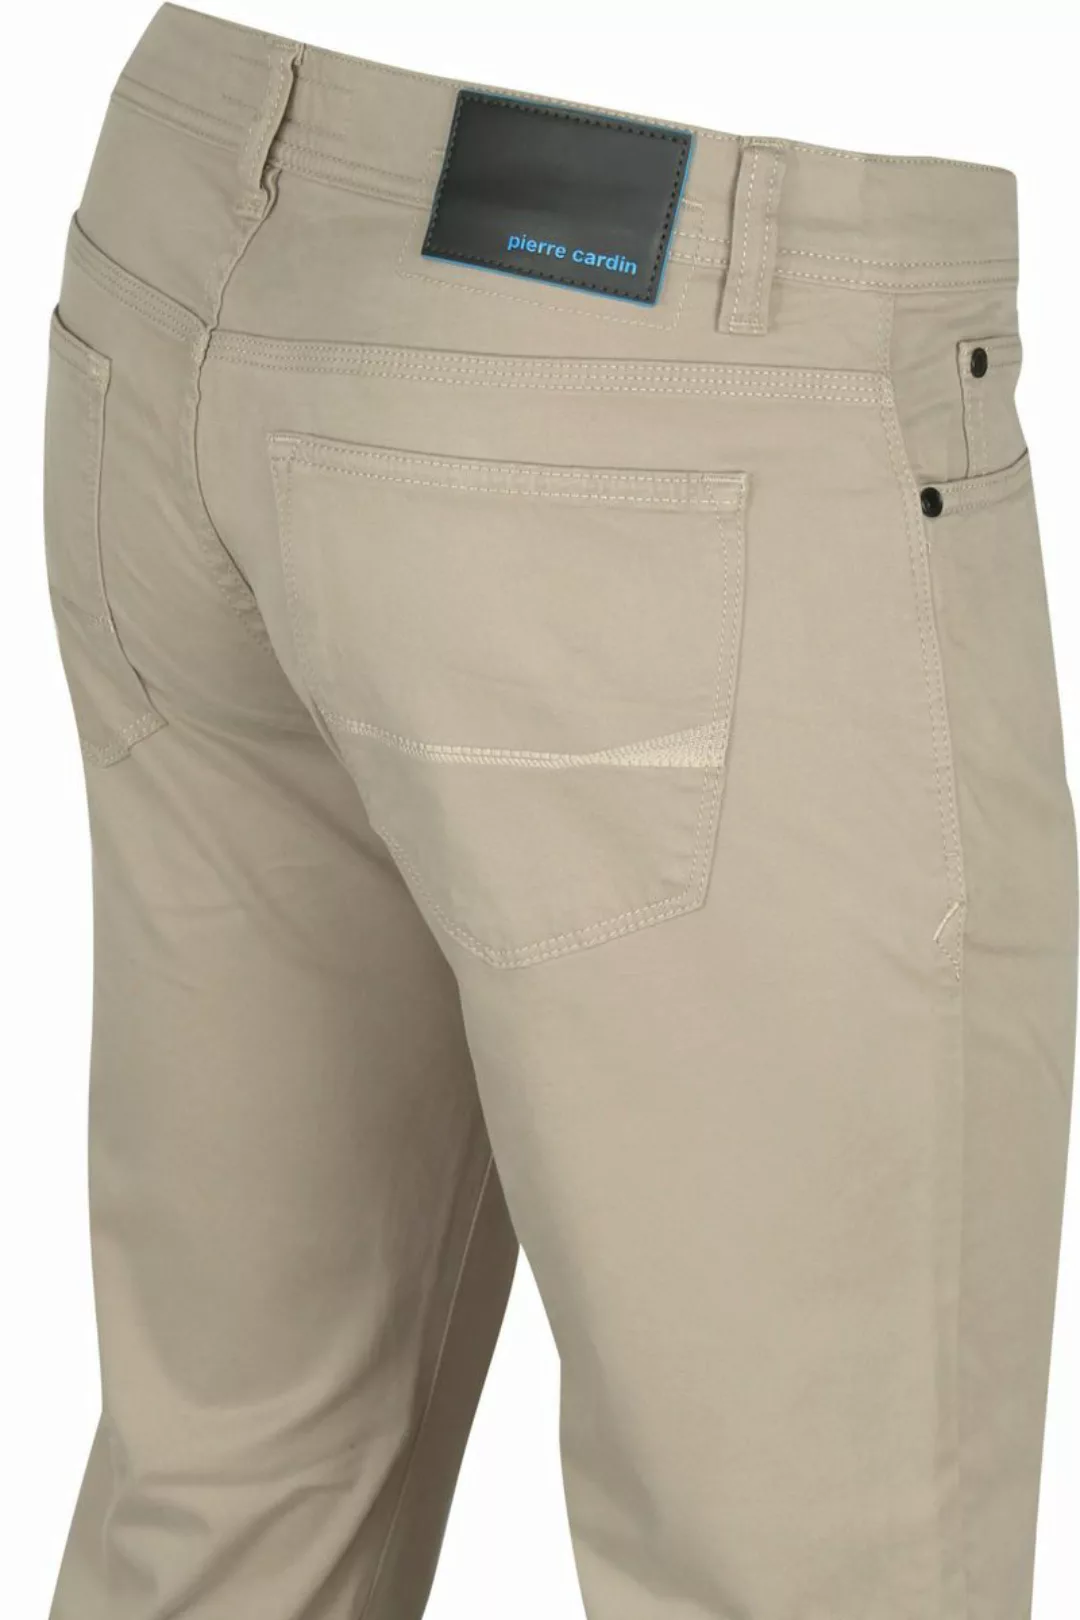 Pierre Cardin Antibes 5 Pocket Hose Khaki - Größe W 34 - L 34 günstig online kaufen